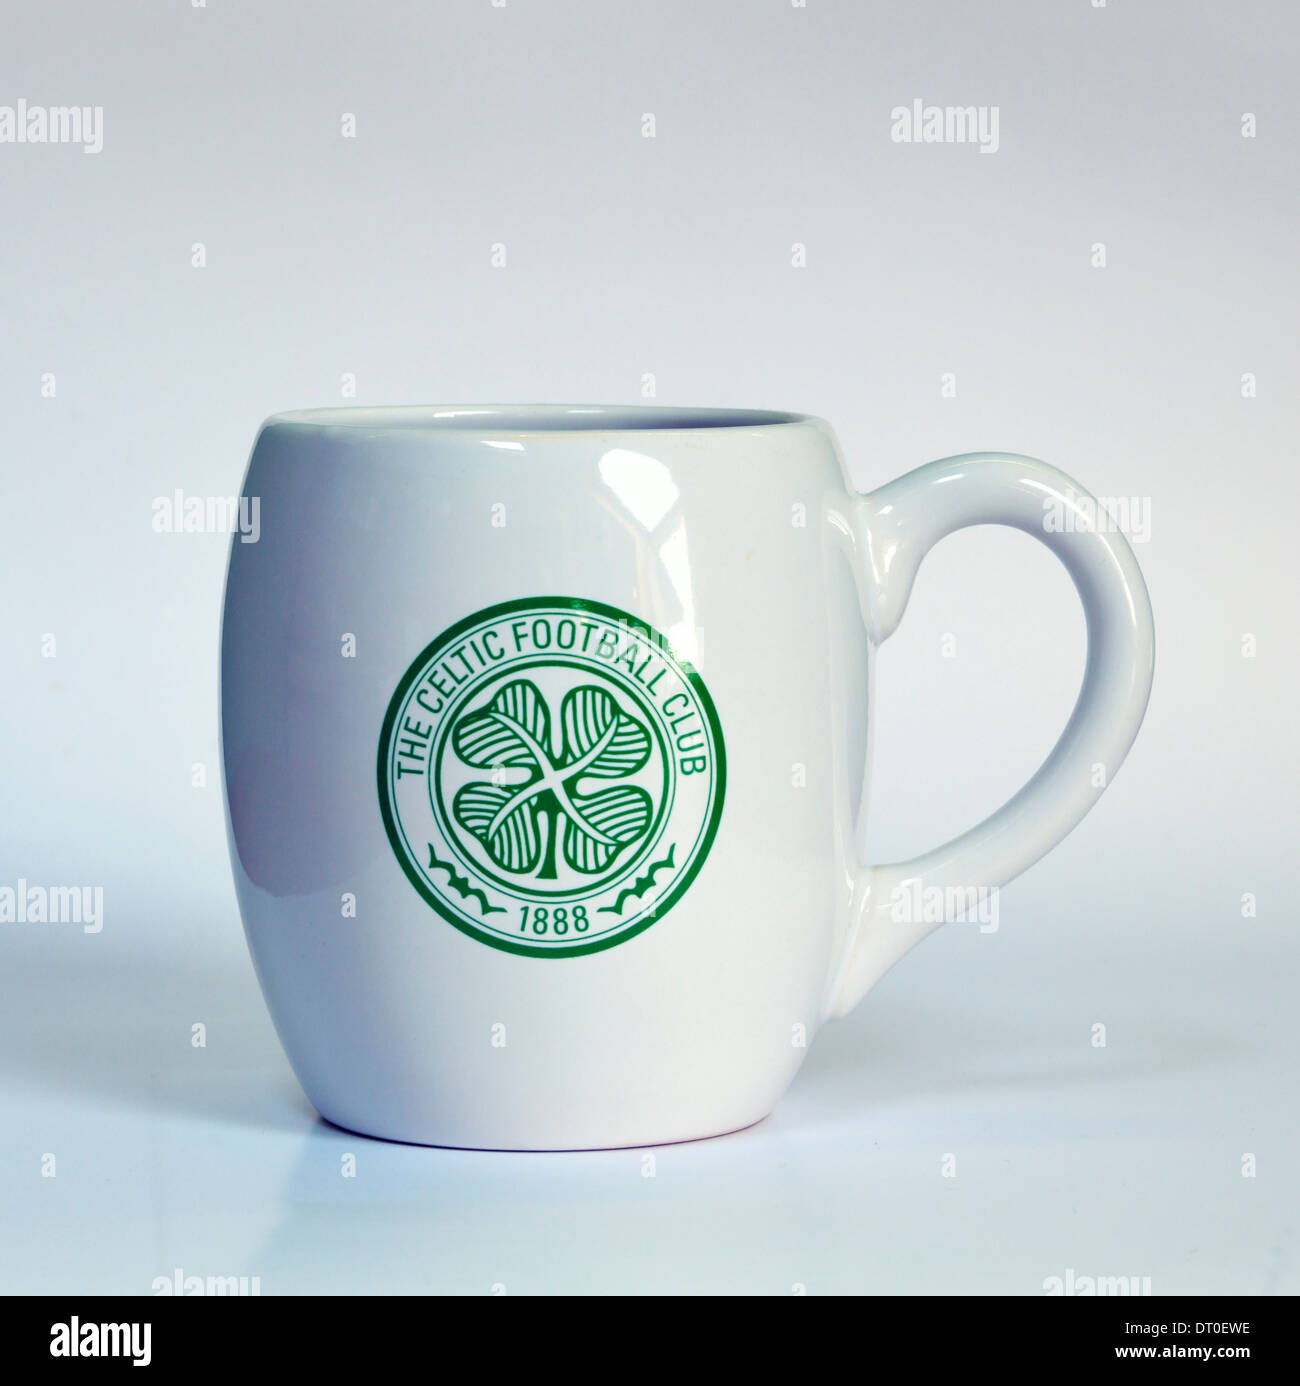 The Celtic Football Club 1888 souvenir ceramic mug. Stock Photo